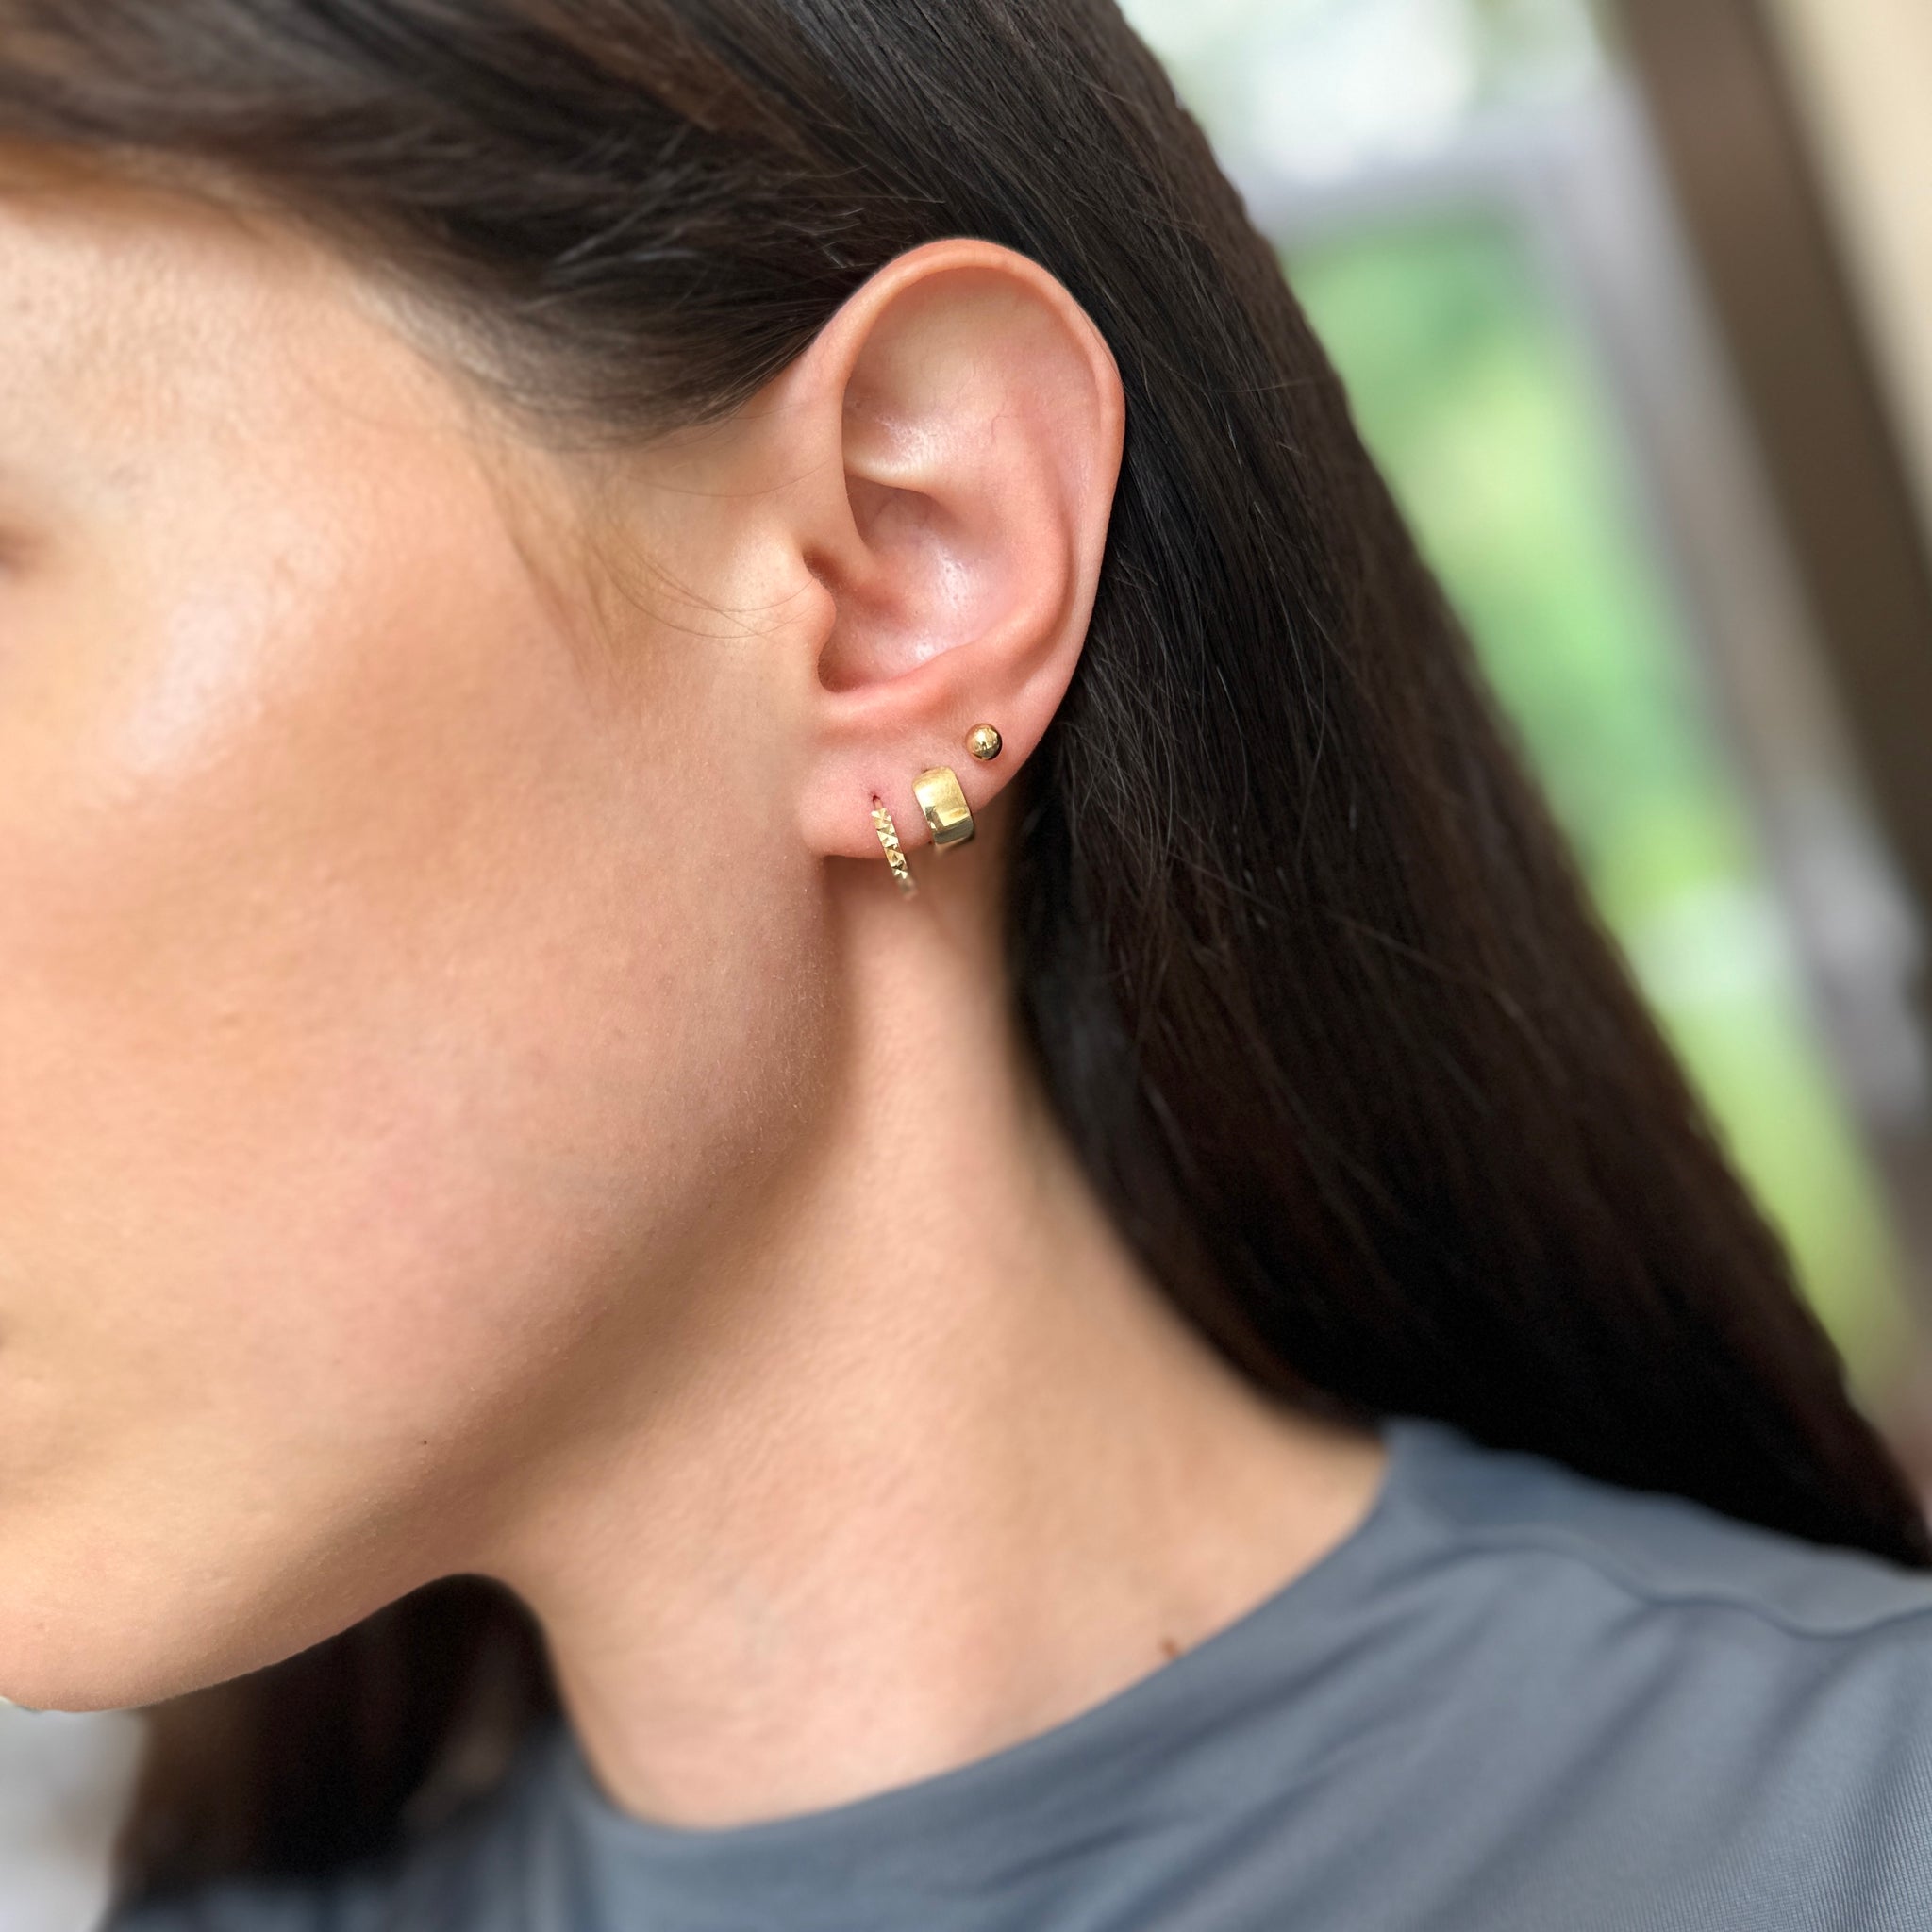 14KT Yellow Gold Diamond-Cut Mini Huggie Hoop Earrings – LSJ